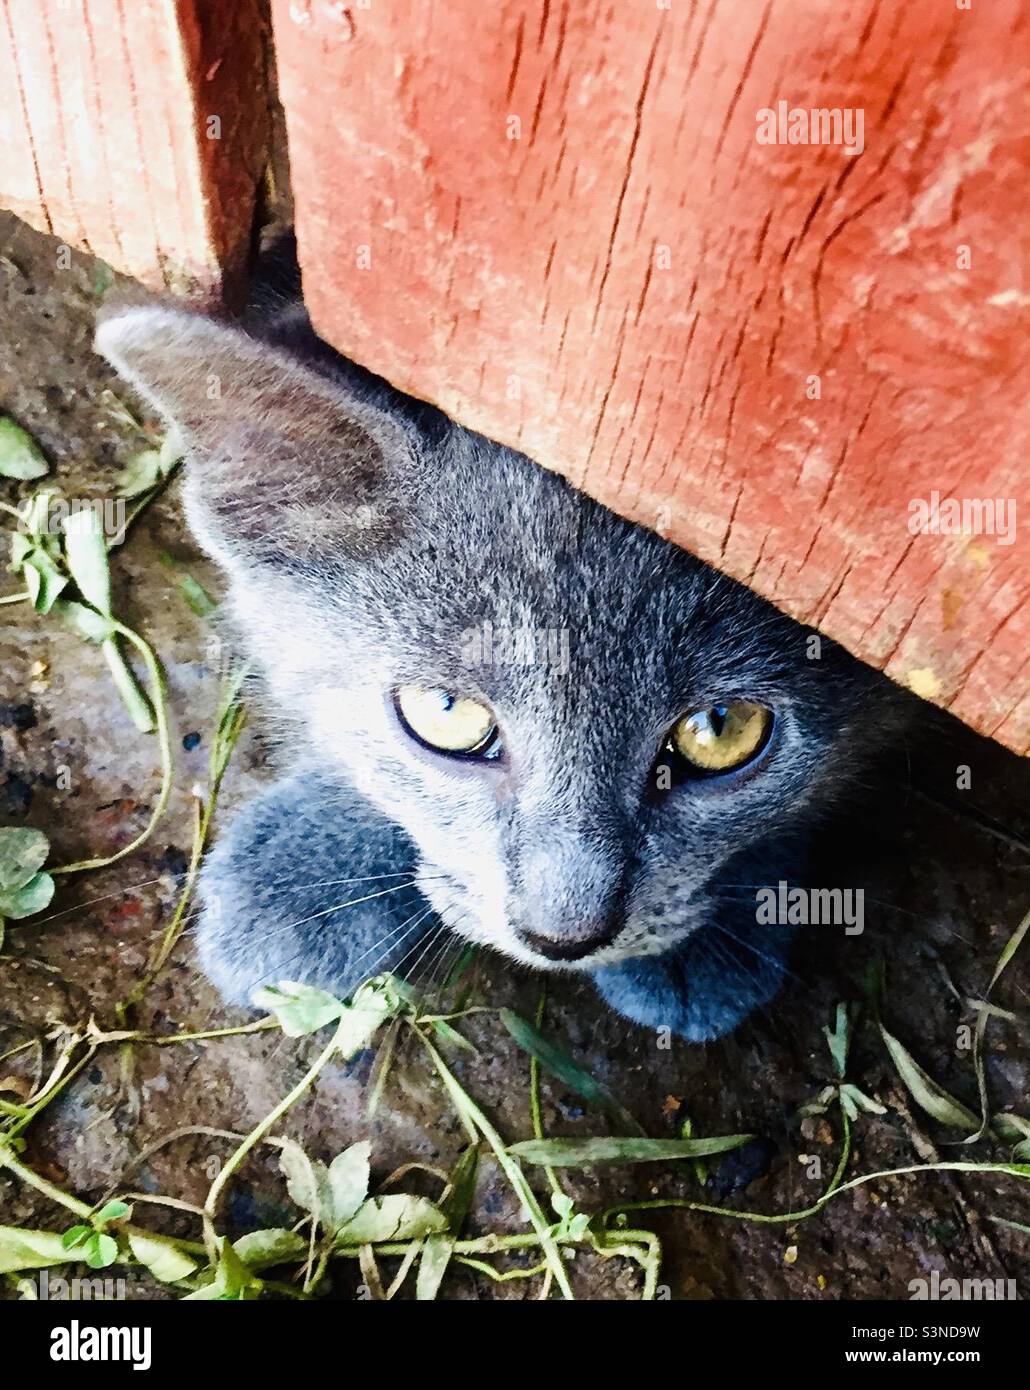 Adorabile, gattino grigio timido sbirciava da sotto una recinzione rossa, nascondiglio, salvataggio degli animali Foto Stock